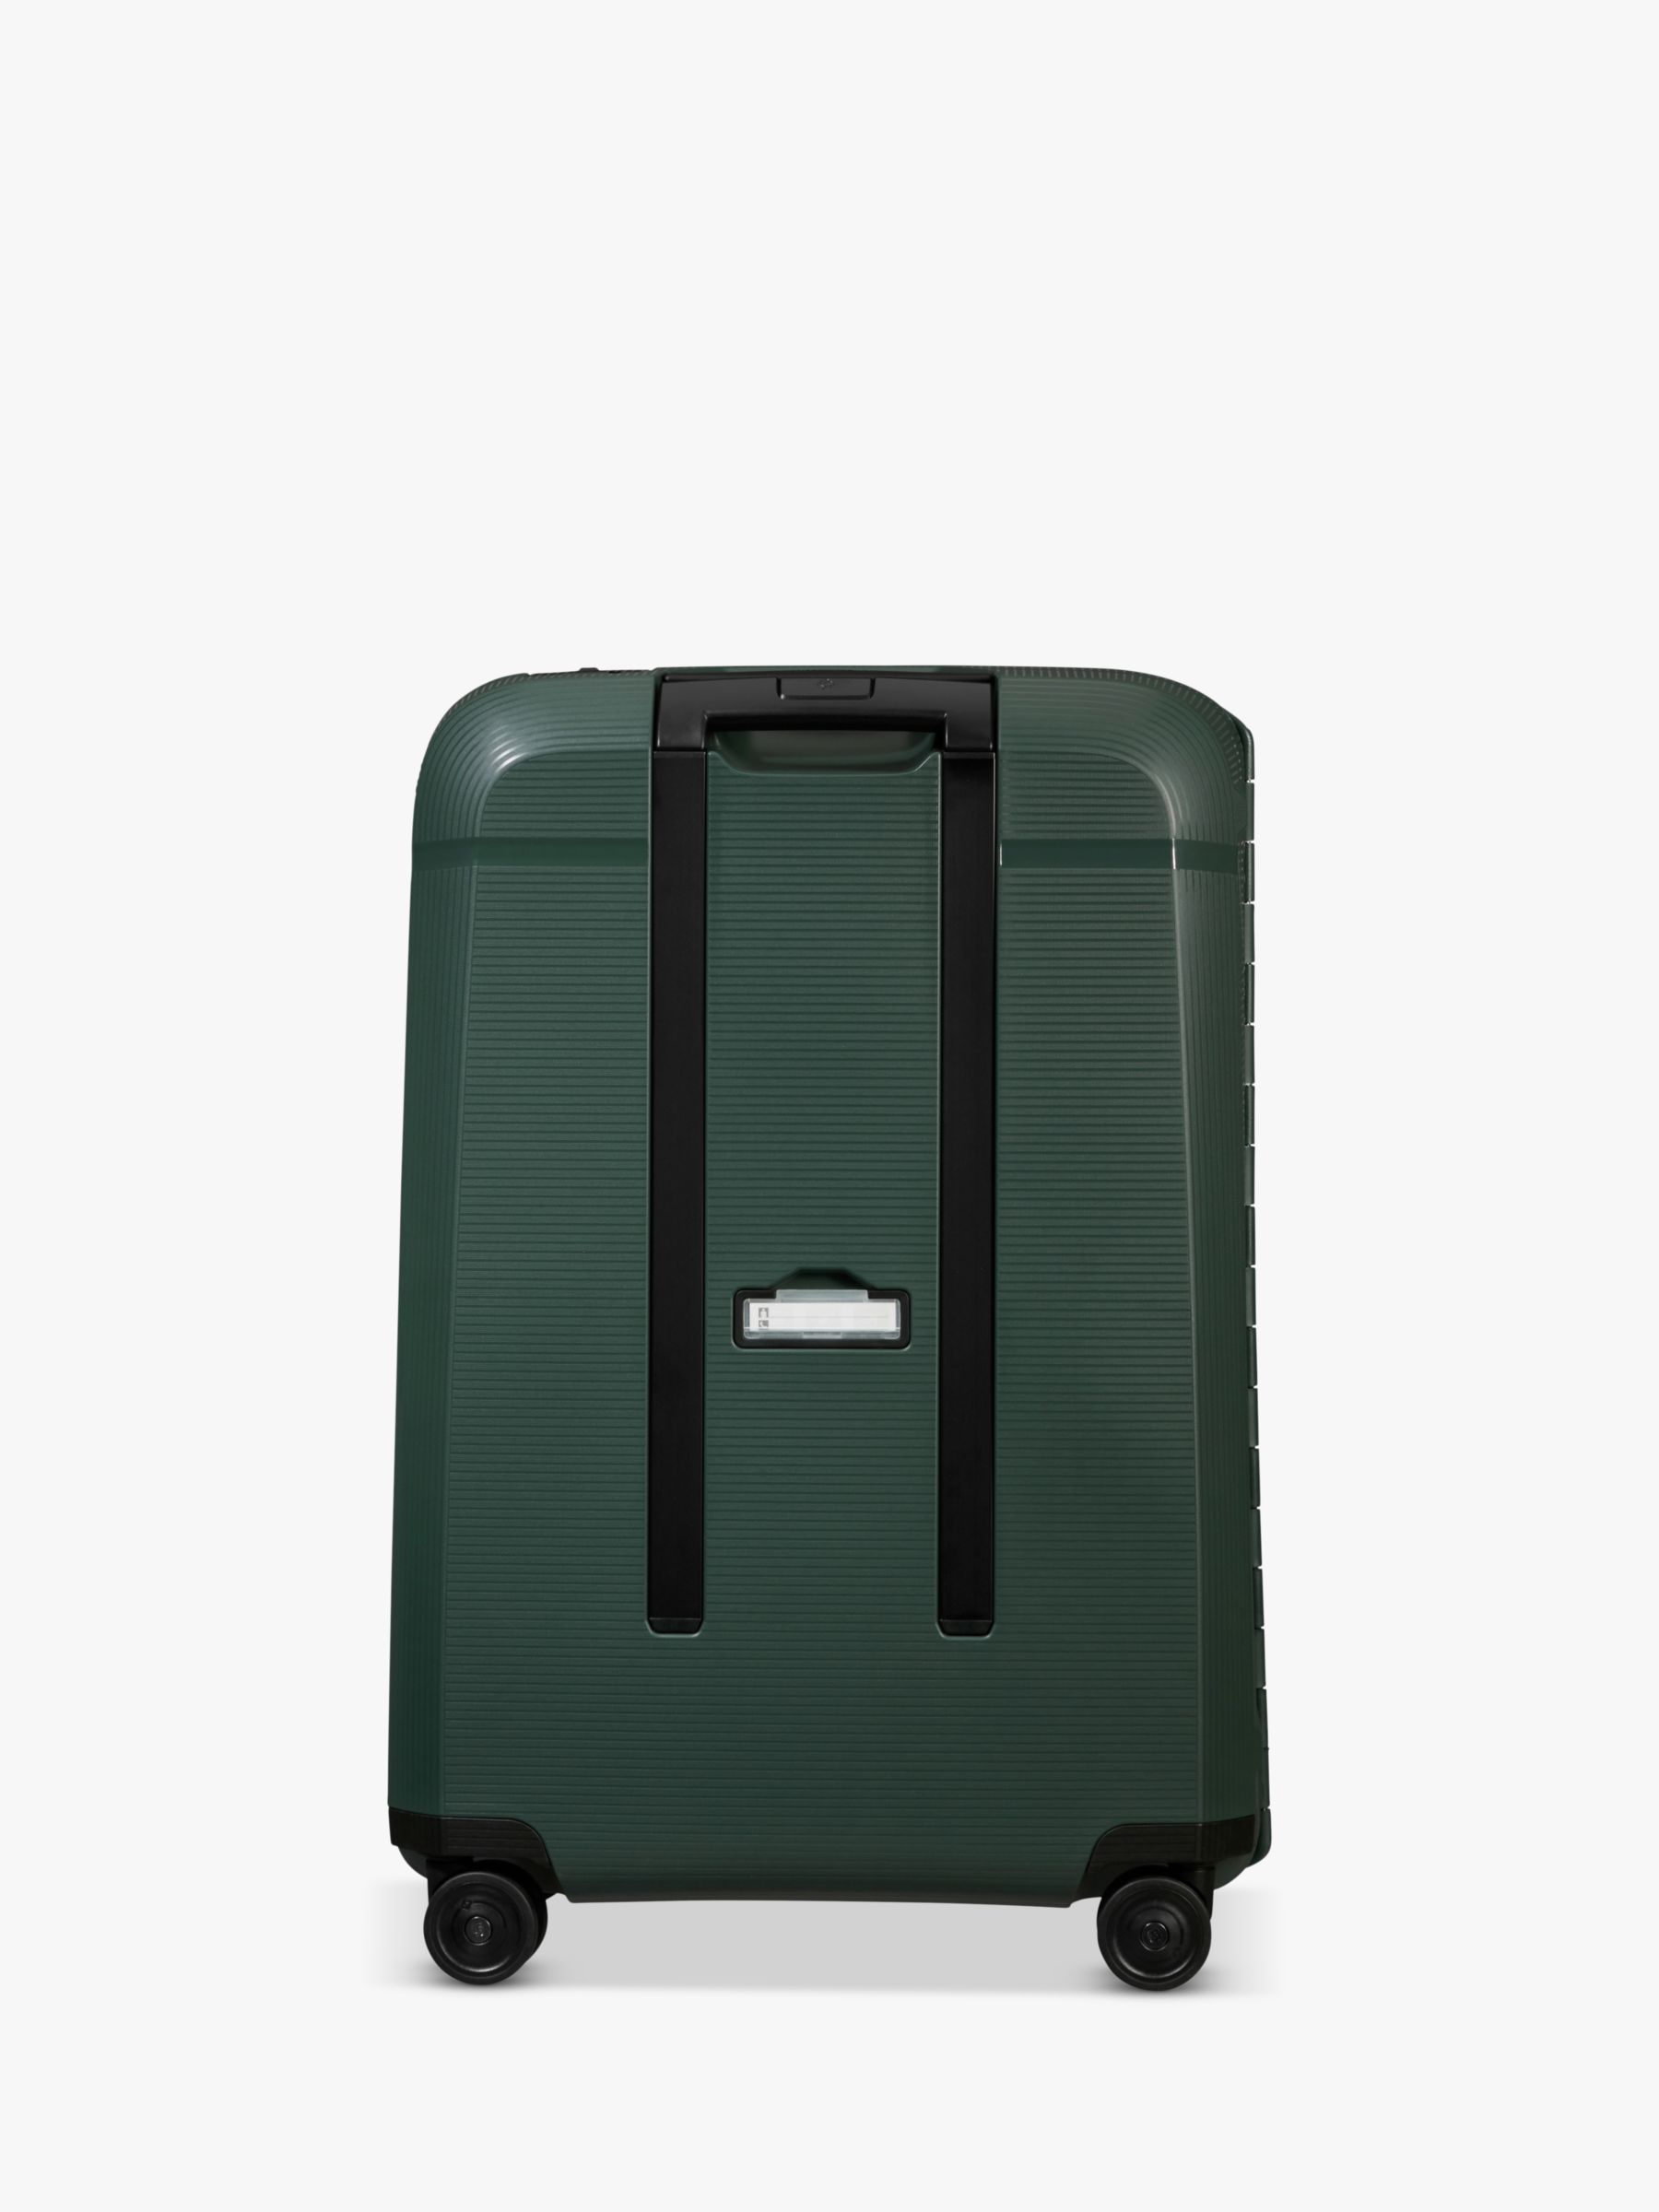 Samsonite Magnum Eco Spinner 69cm 4-Wheel Medium Suitcase, Forest Green